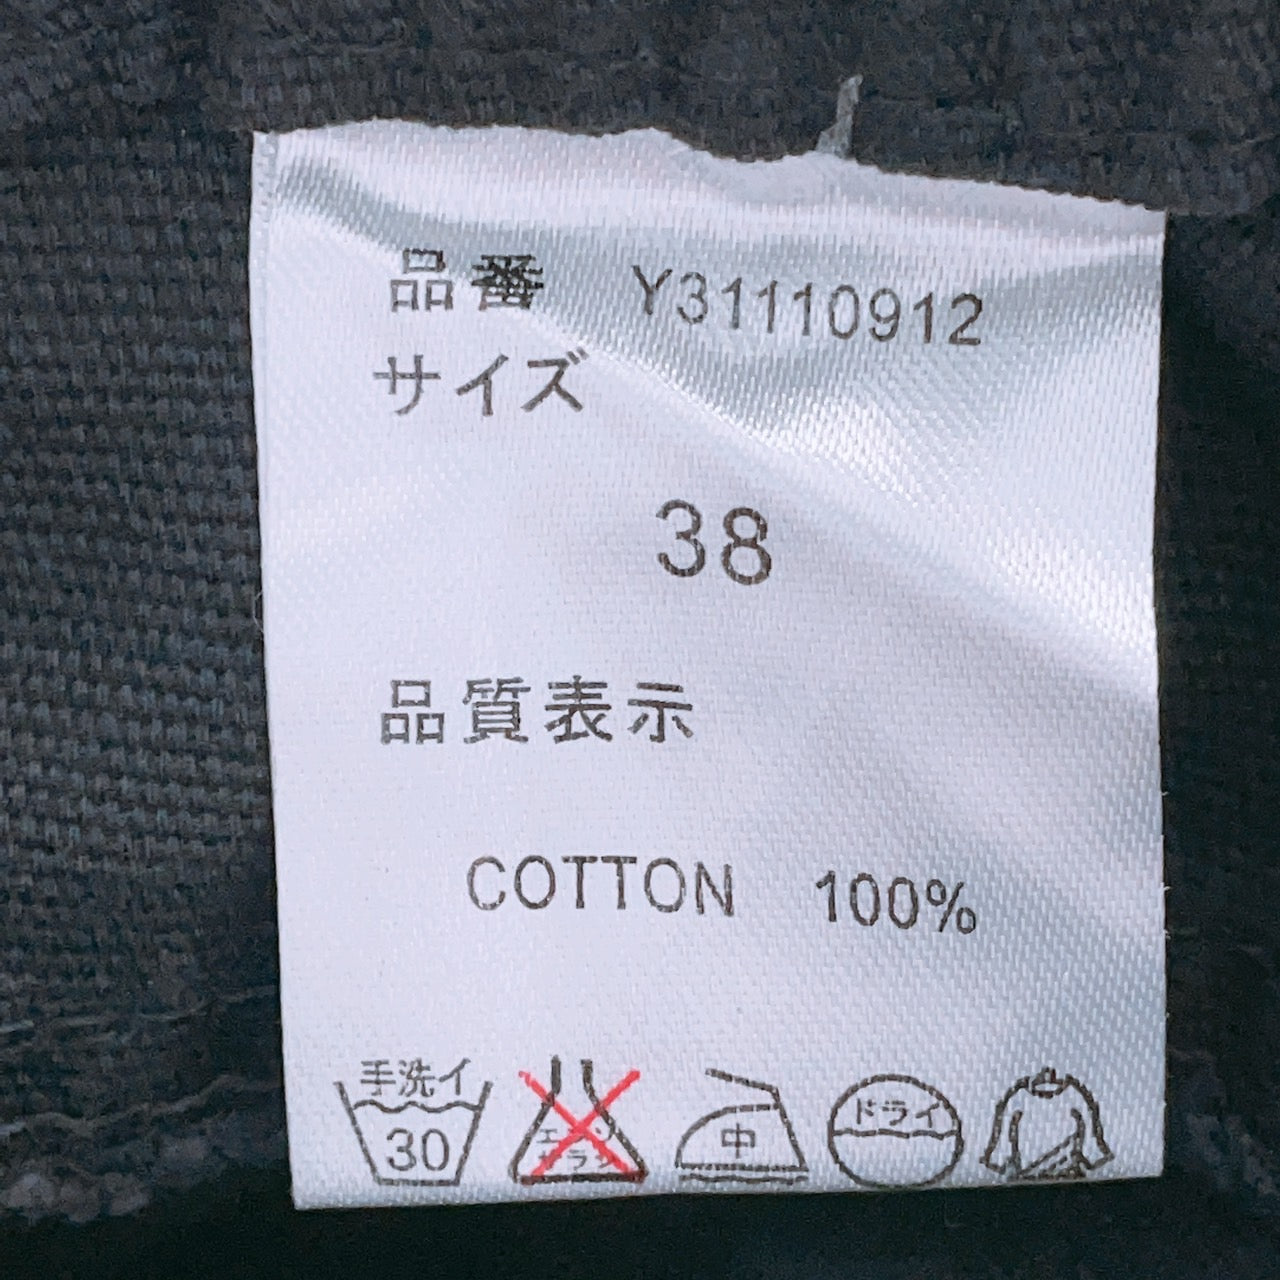 【25572】 REAL CUBE リアルキューブ カジュアルパンツ サイズ38 / 約M ダークネイビー 七分丈パンツ 裾飾りボタン シンプル レディース